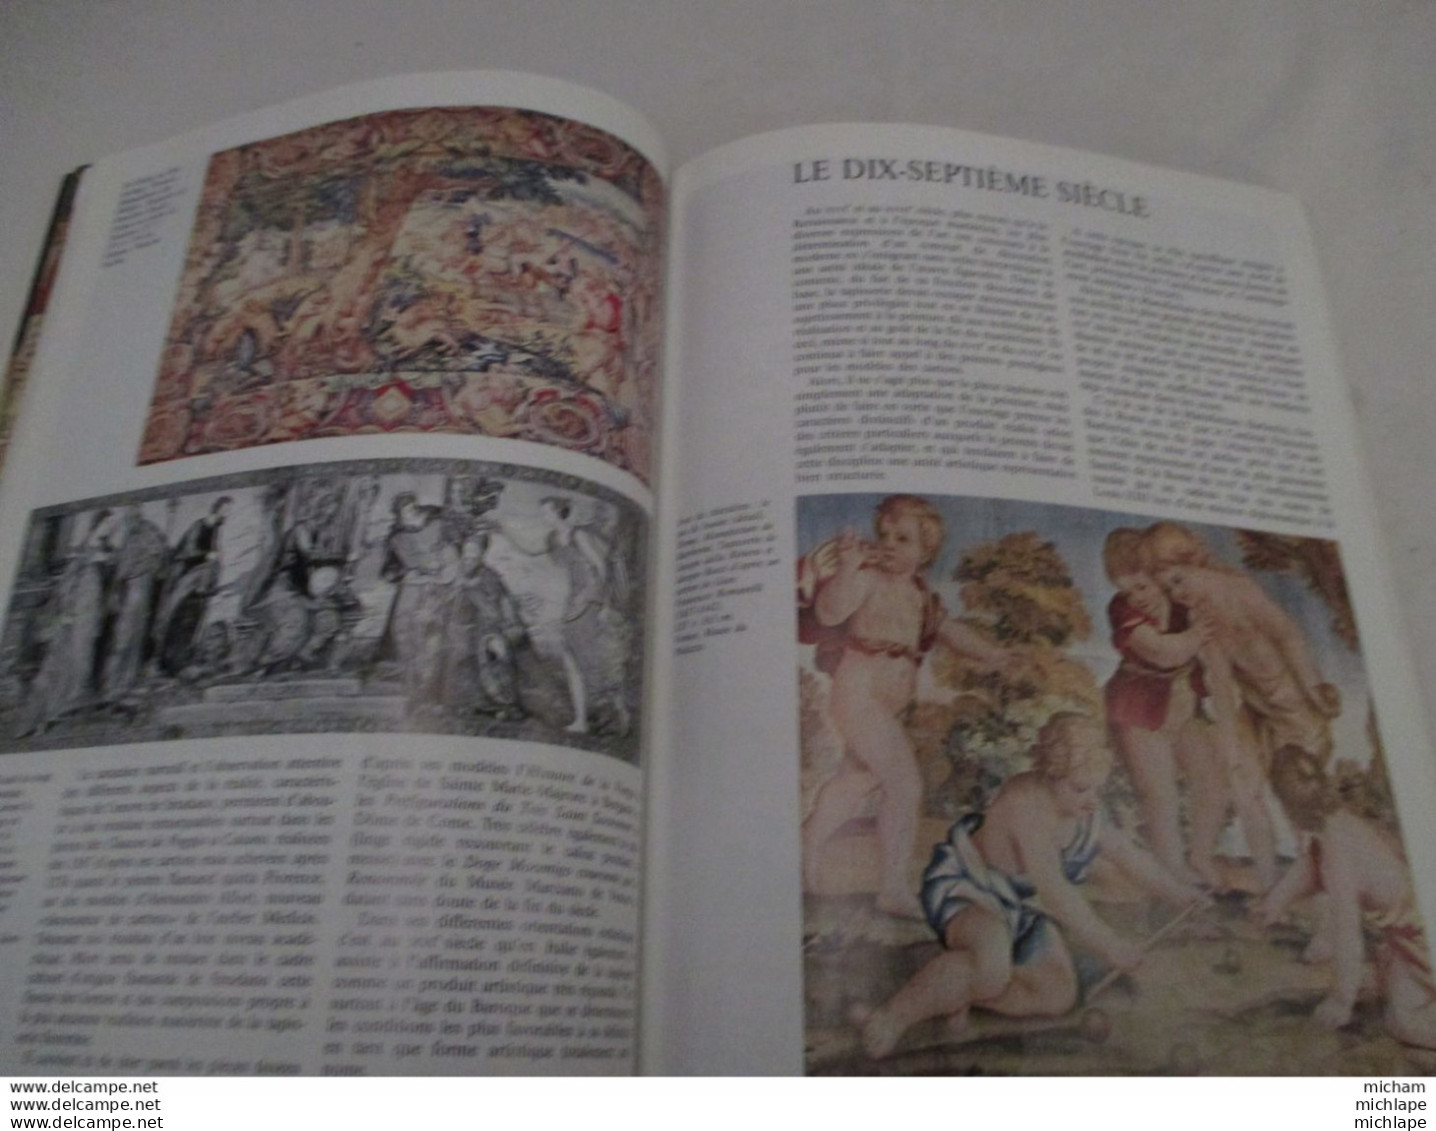 Antiquité  Et Objets D'art - Tapisserie  - 1990 - 79 Pages  -edit. Fabri - Format  22 X 29 -trés Bon état - Art